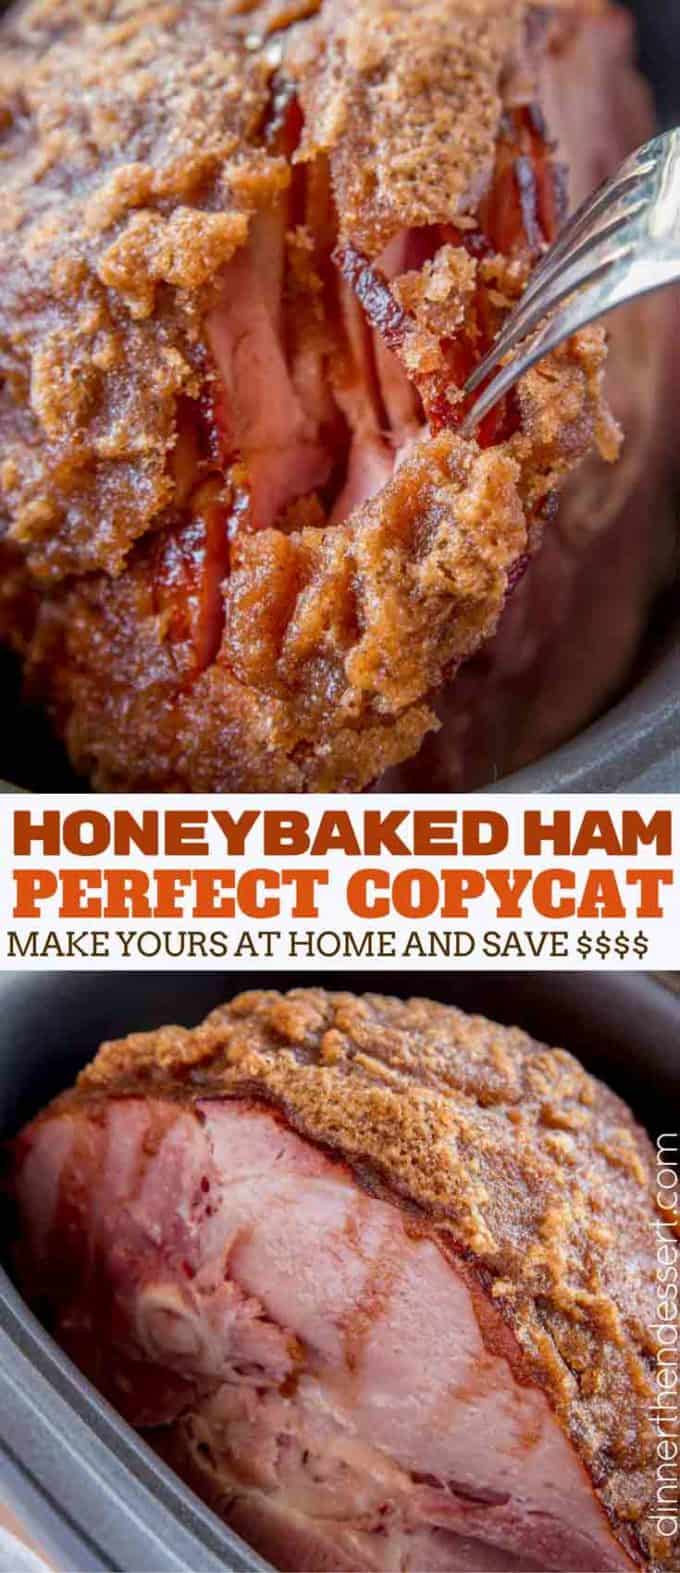 HoneyBaked Ham copycat fork-tender